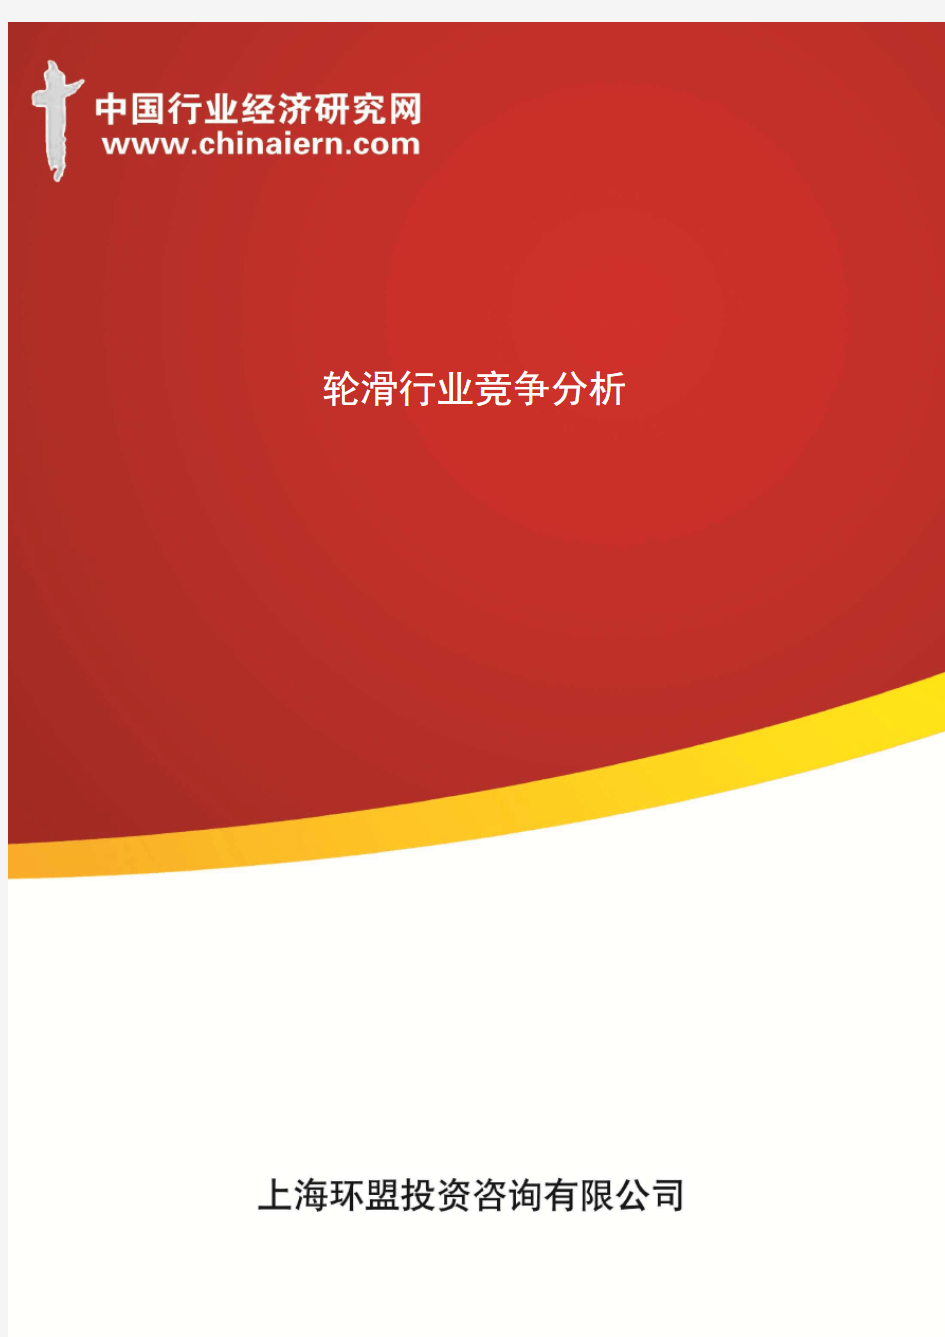 轮滑行业竞争分析(上海环盟)